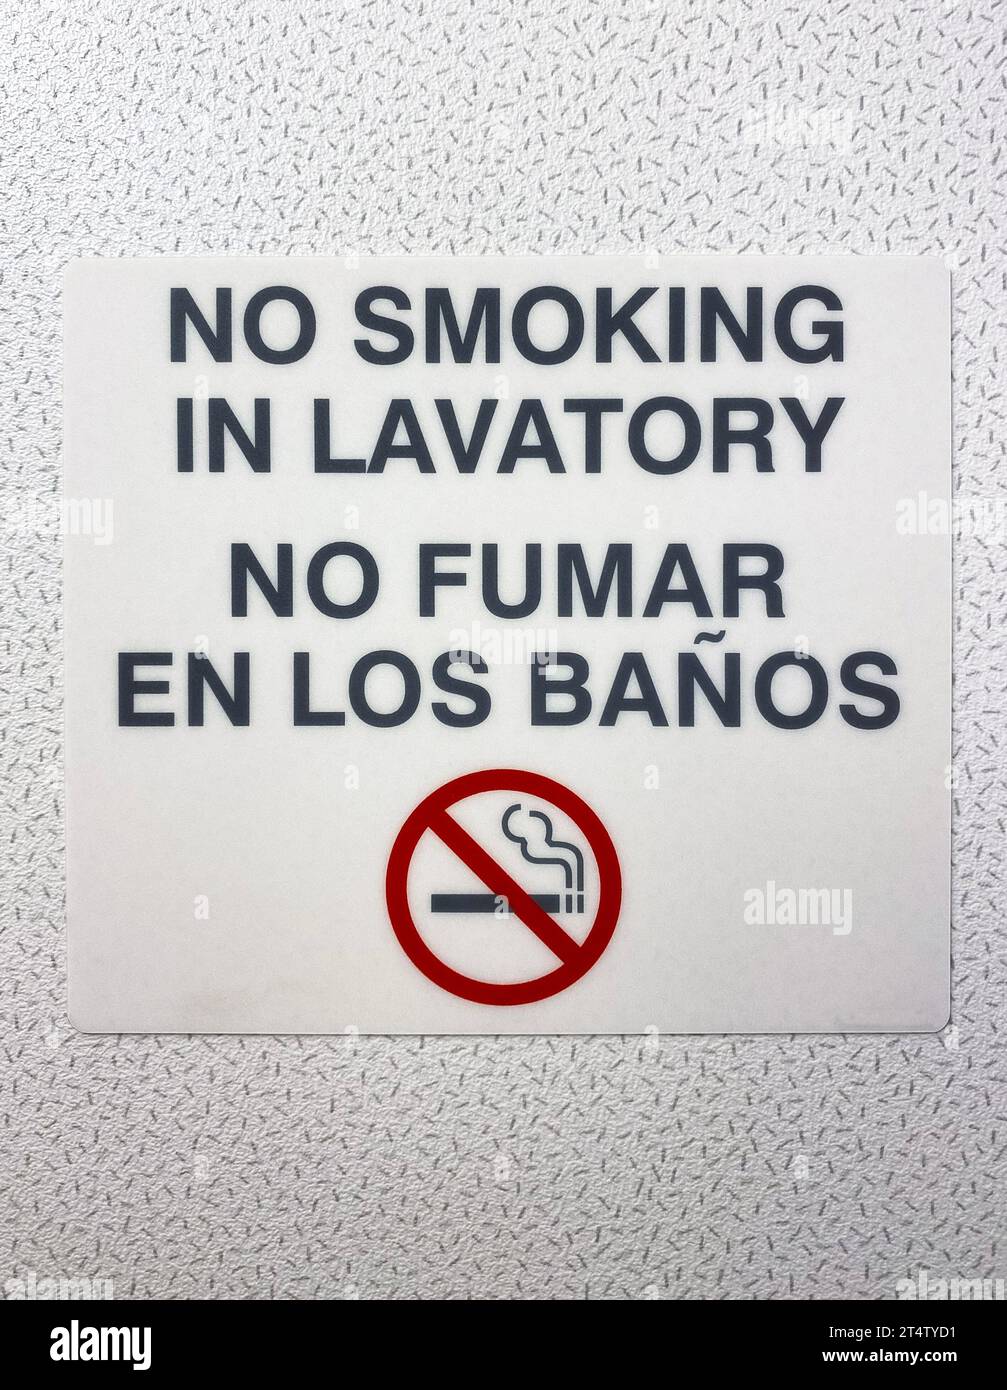 Cartel Prohibido fumar/enc fuego 204